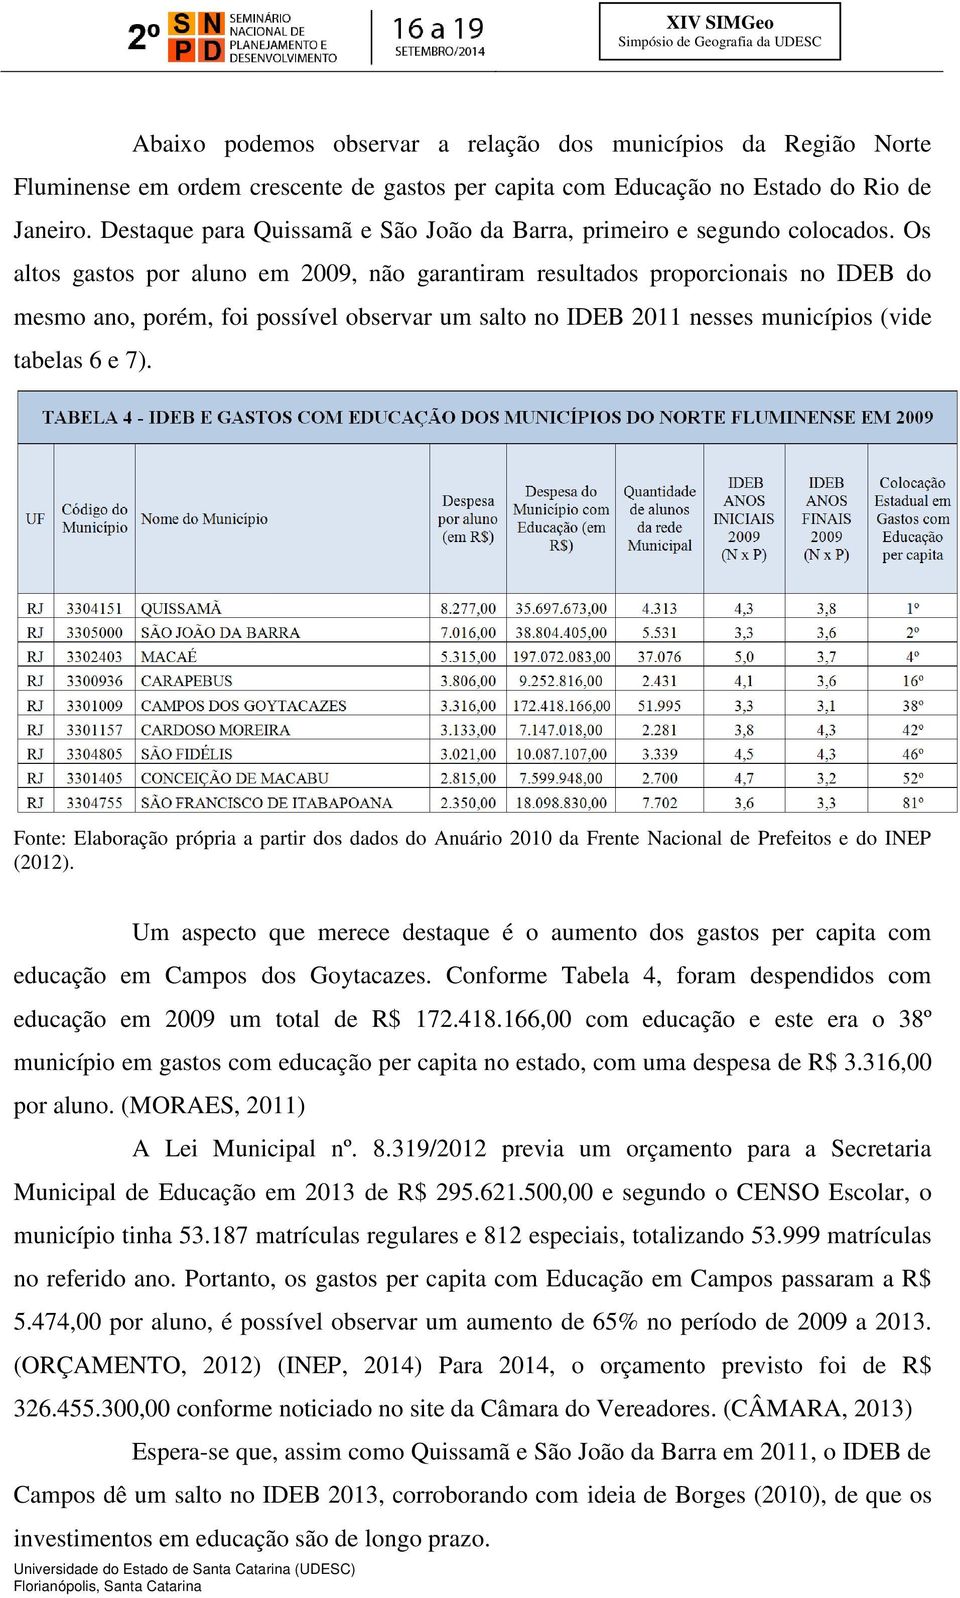 Os altos gastos por aluno em 2009, não garantiram resultados proporcionais no IDEB do mesmo ano, porém, foi possível observar um salto no IDEB 2011 nesses municípios (vide tabelas 6 e 7).